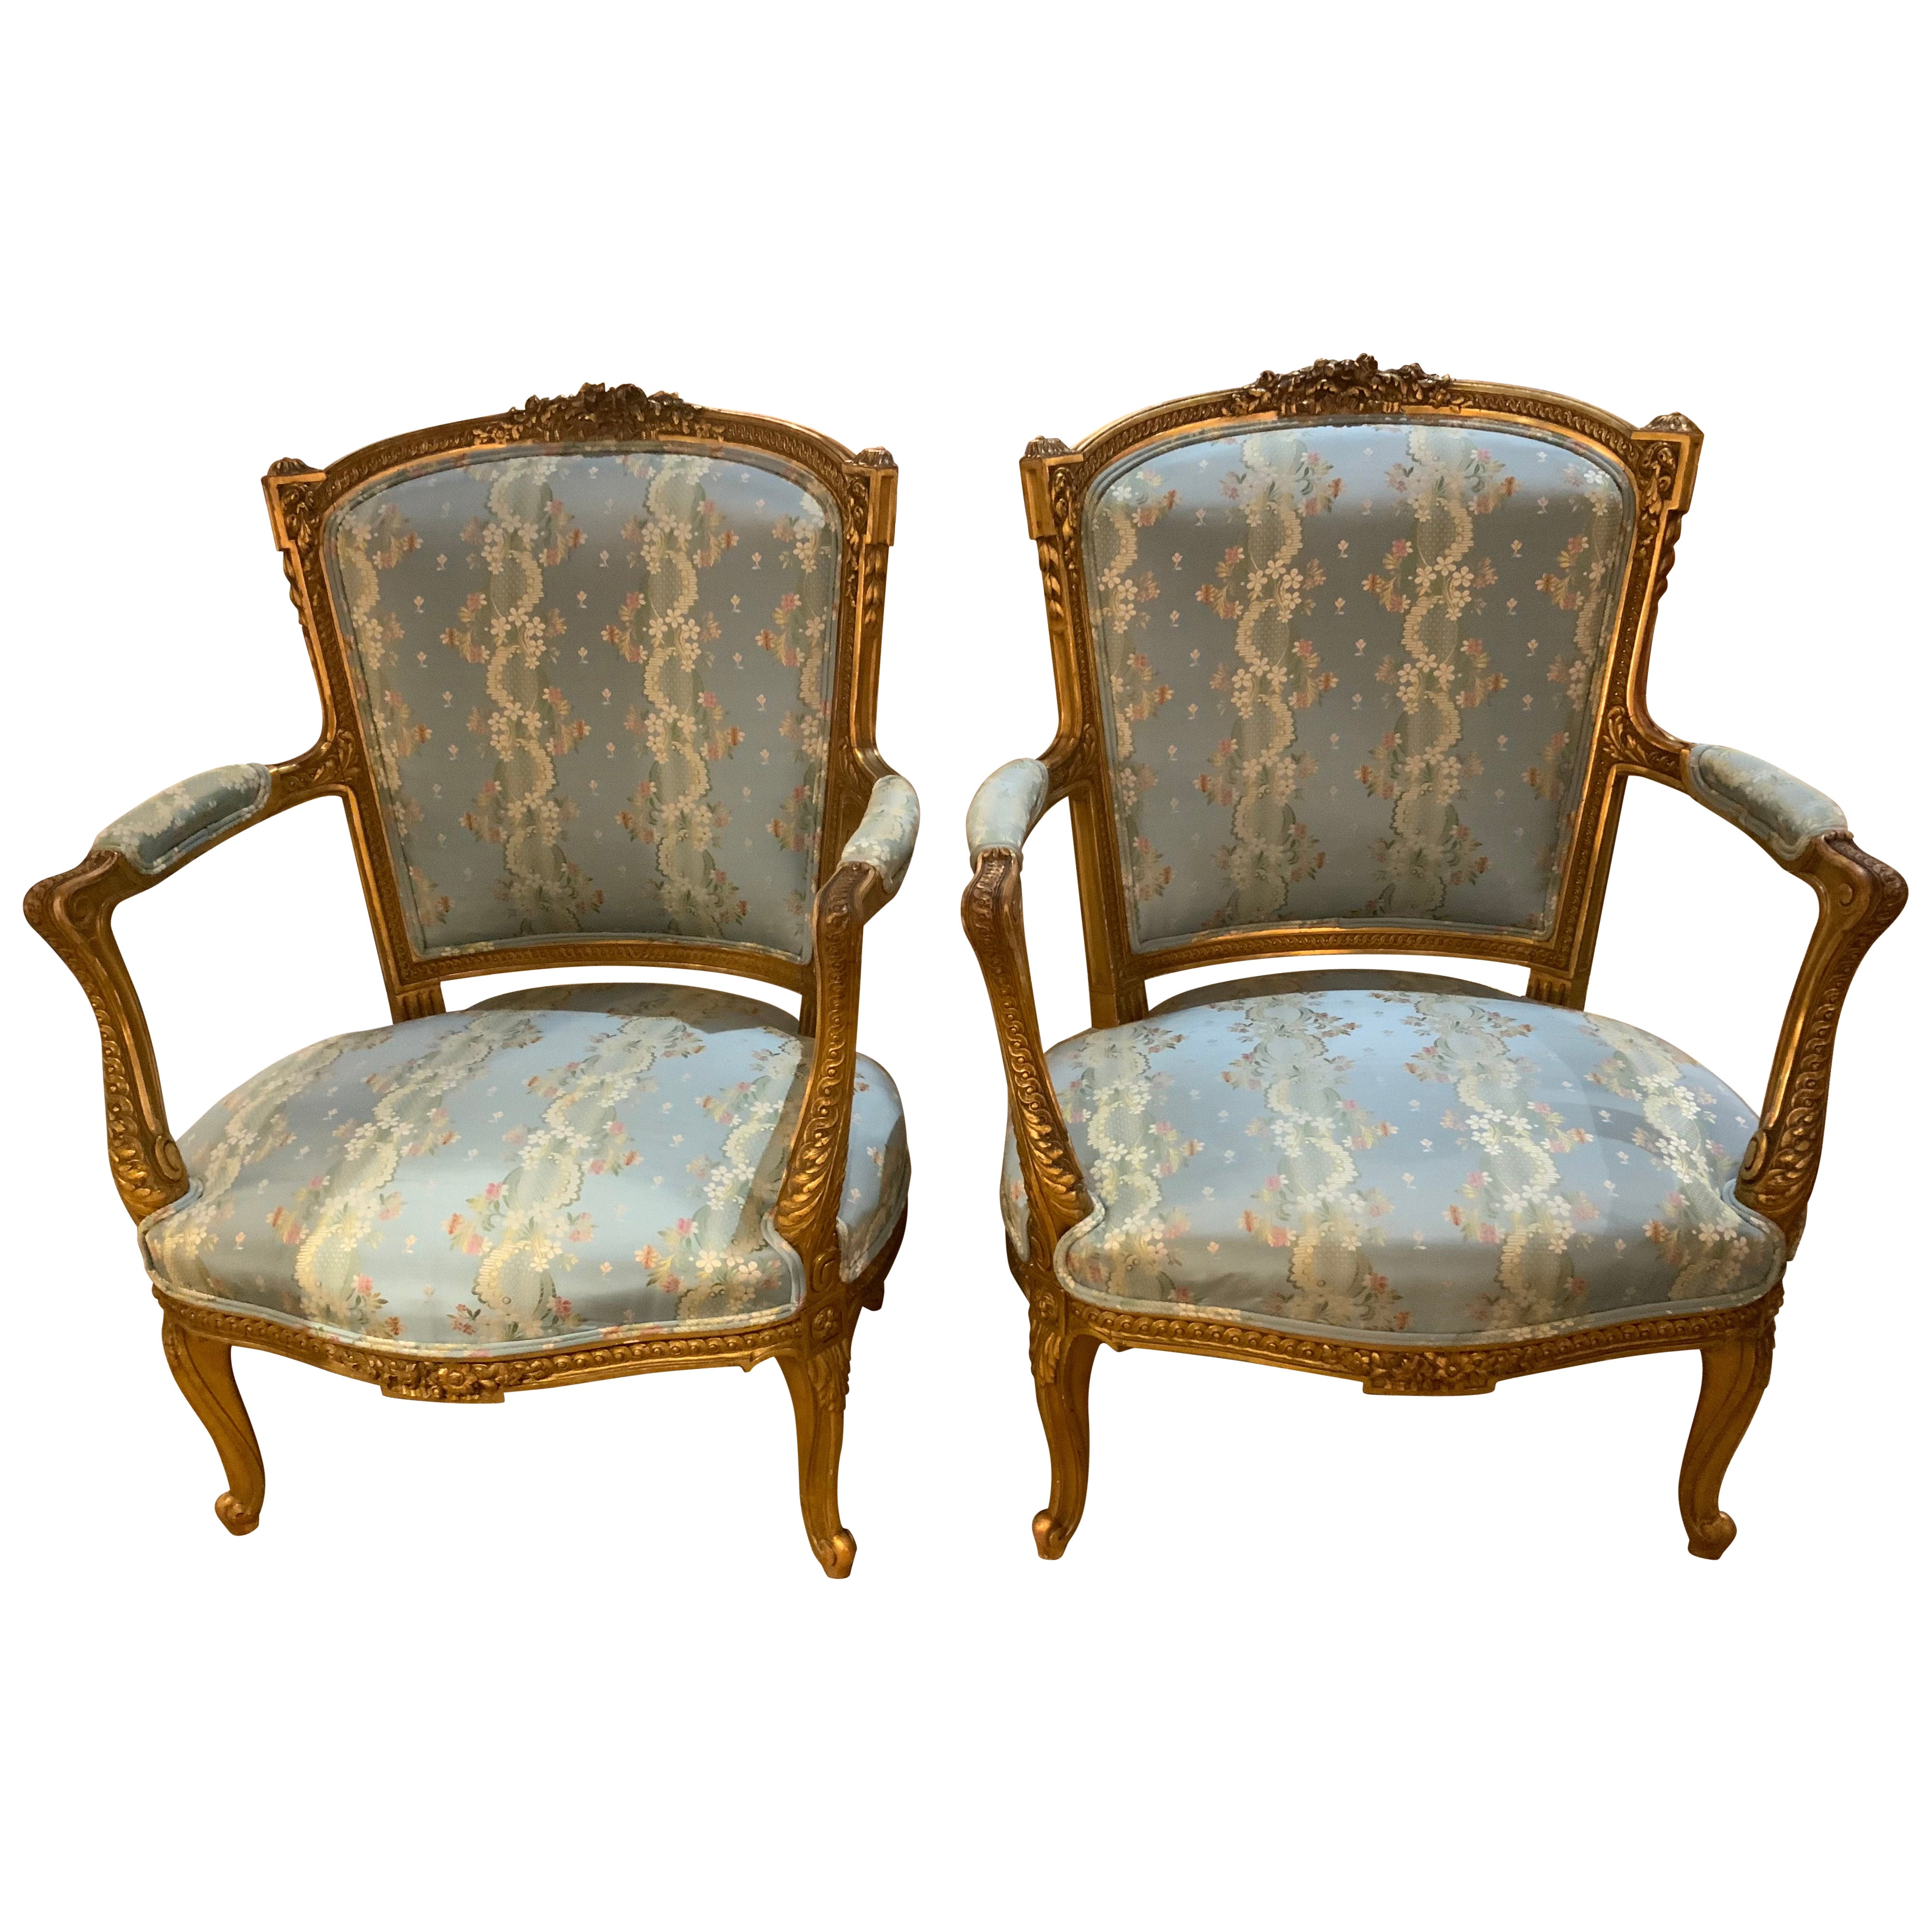 Paire de fauteuils/fauteuils français de style Louis XV en bois doré